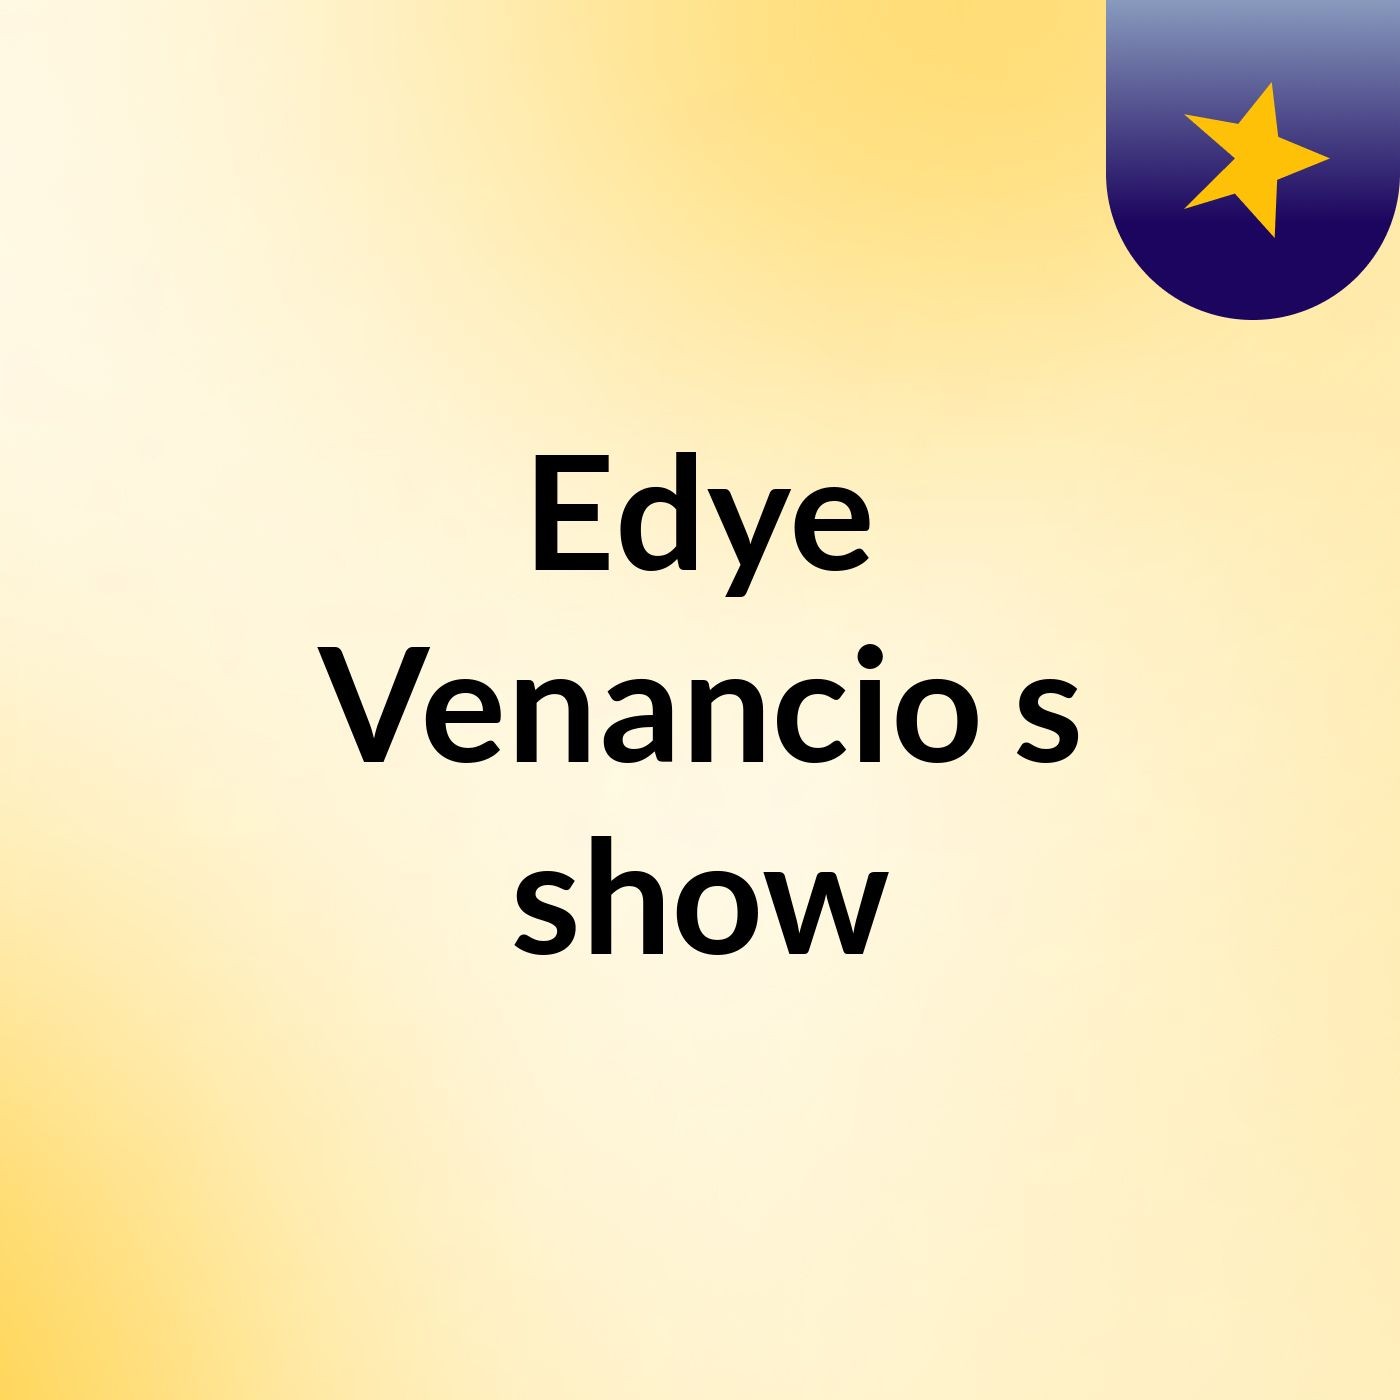 Edye Venancio's show